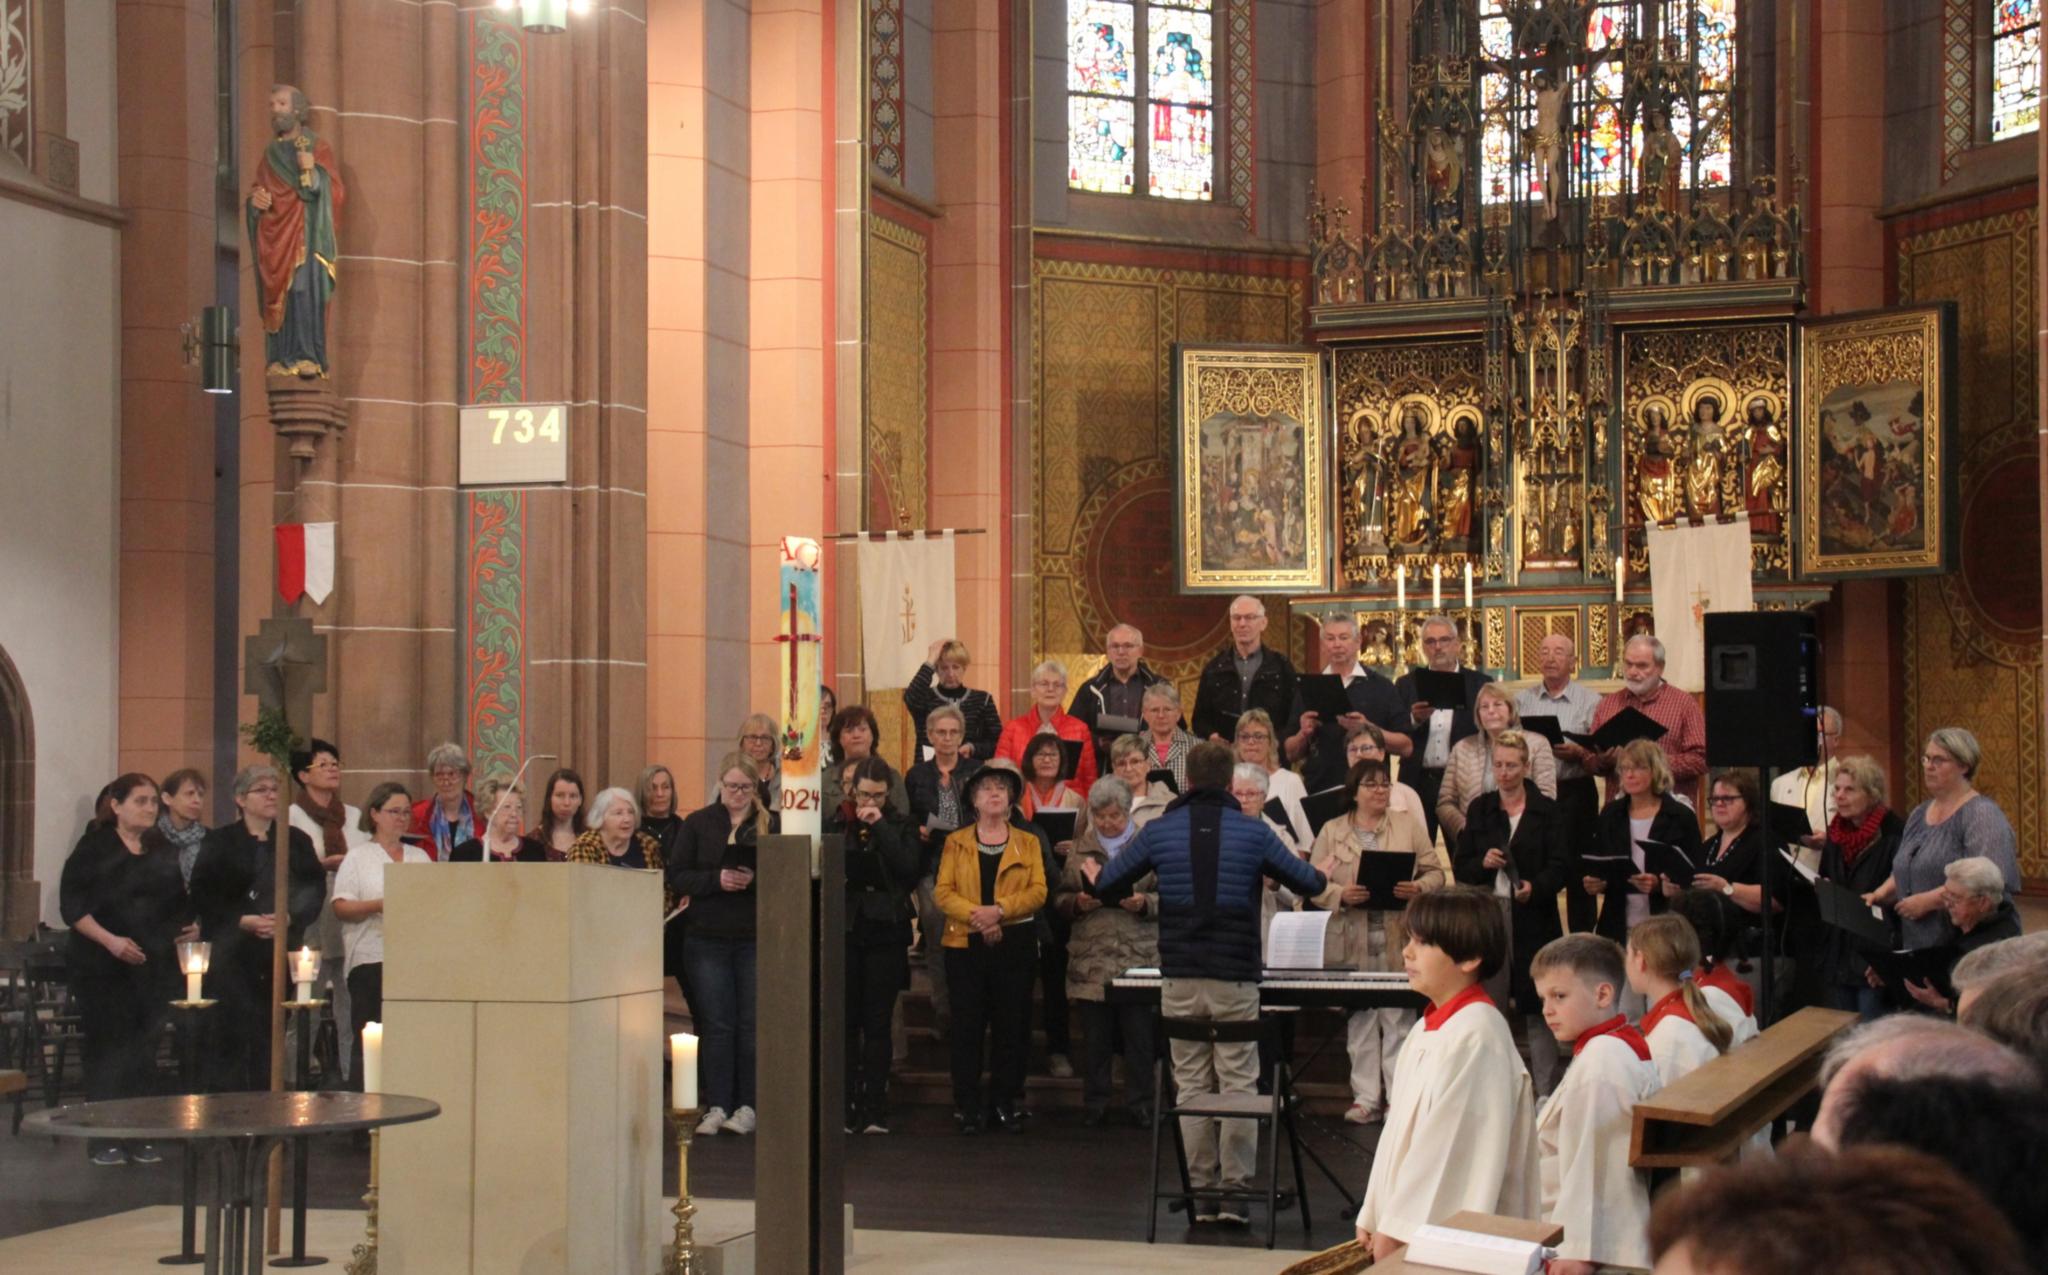 'Freude, schöner Götterfunke' erklang die Europa-Hymne durch den Kirchenchor.